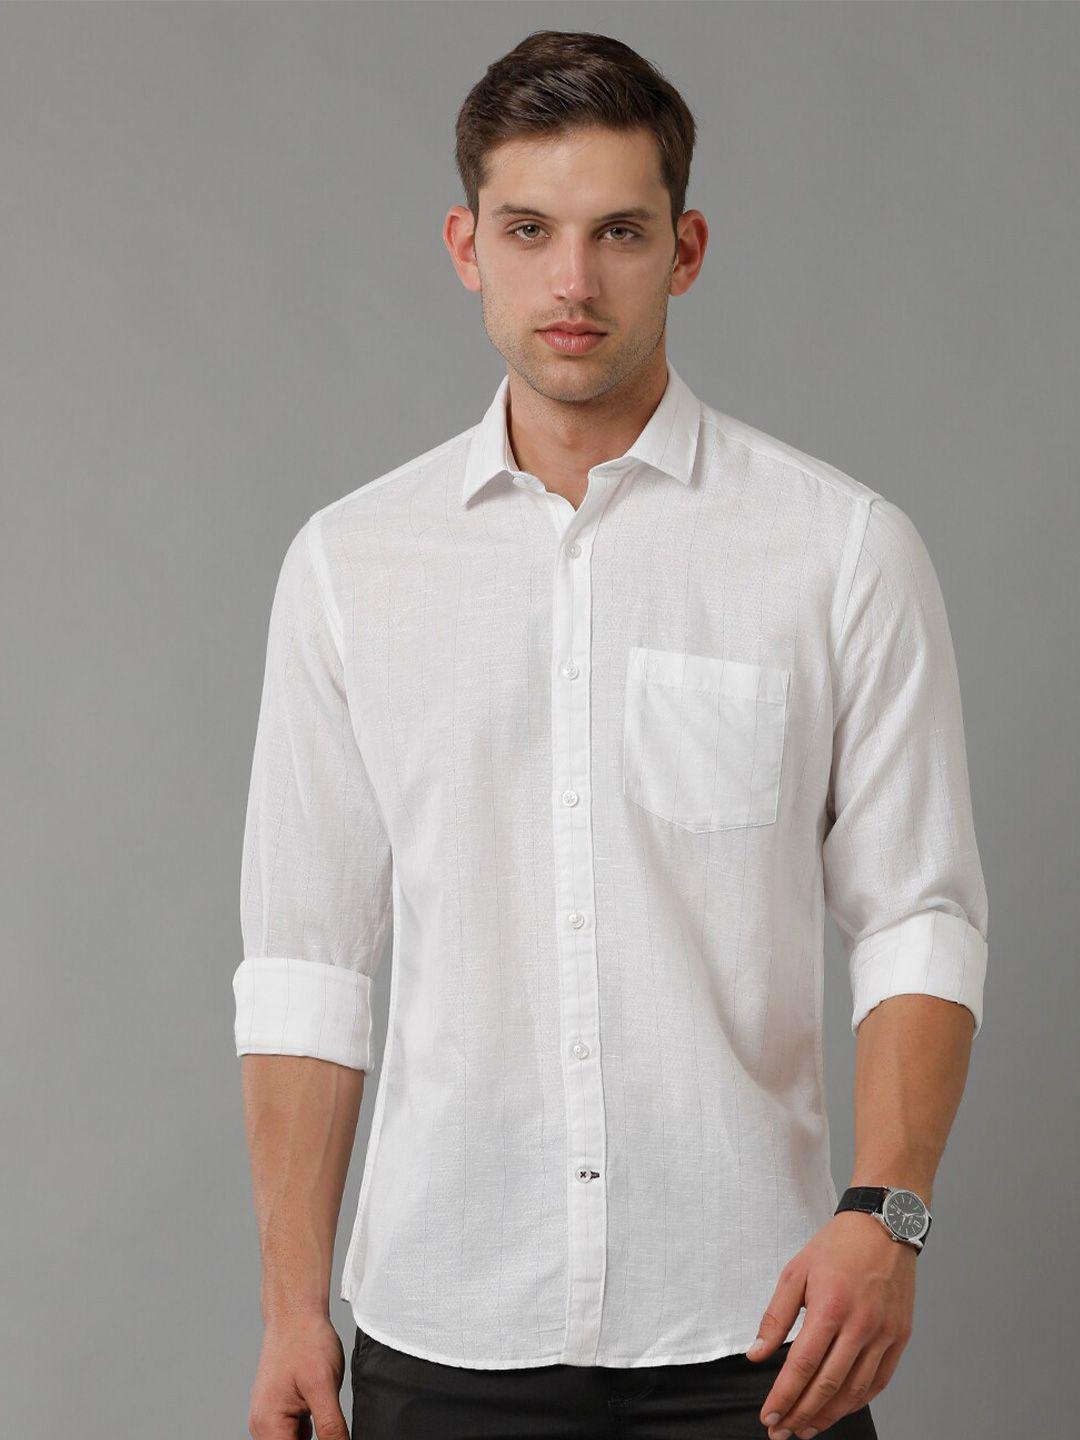 linen-club-men-contemporary-checked-cotton-linen-casual-shirt